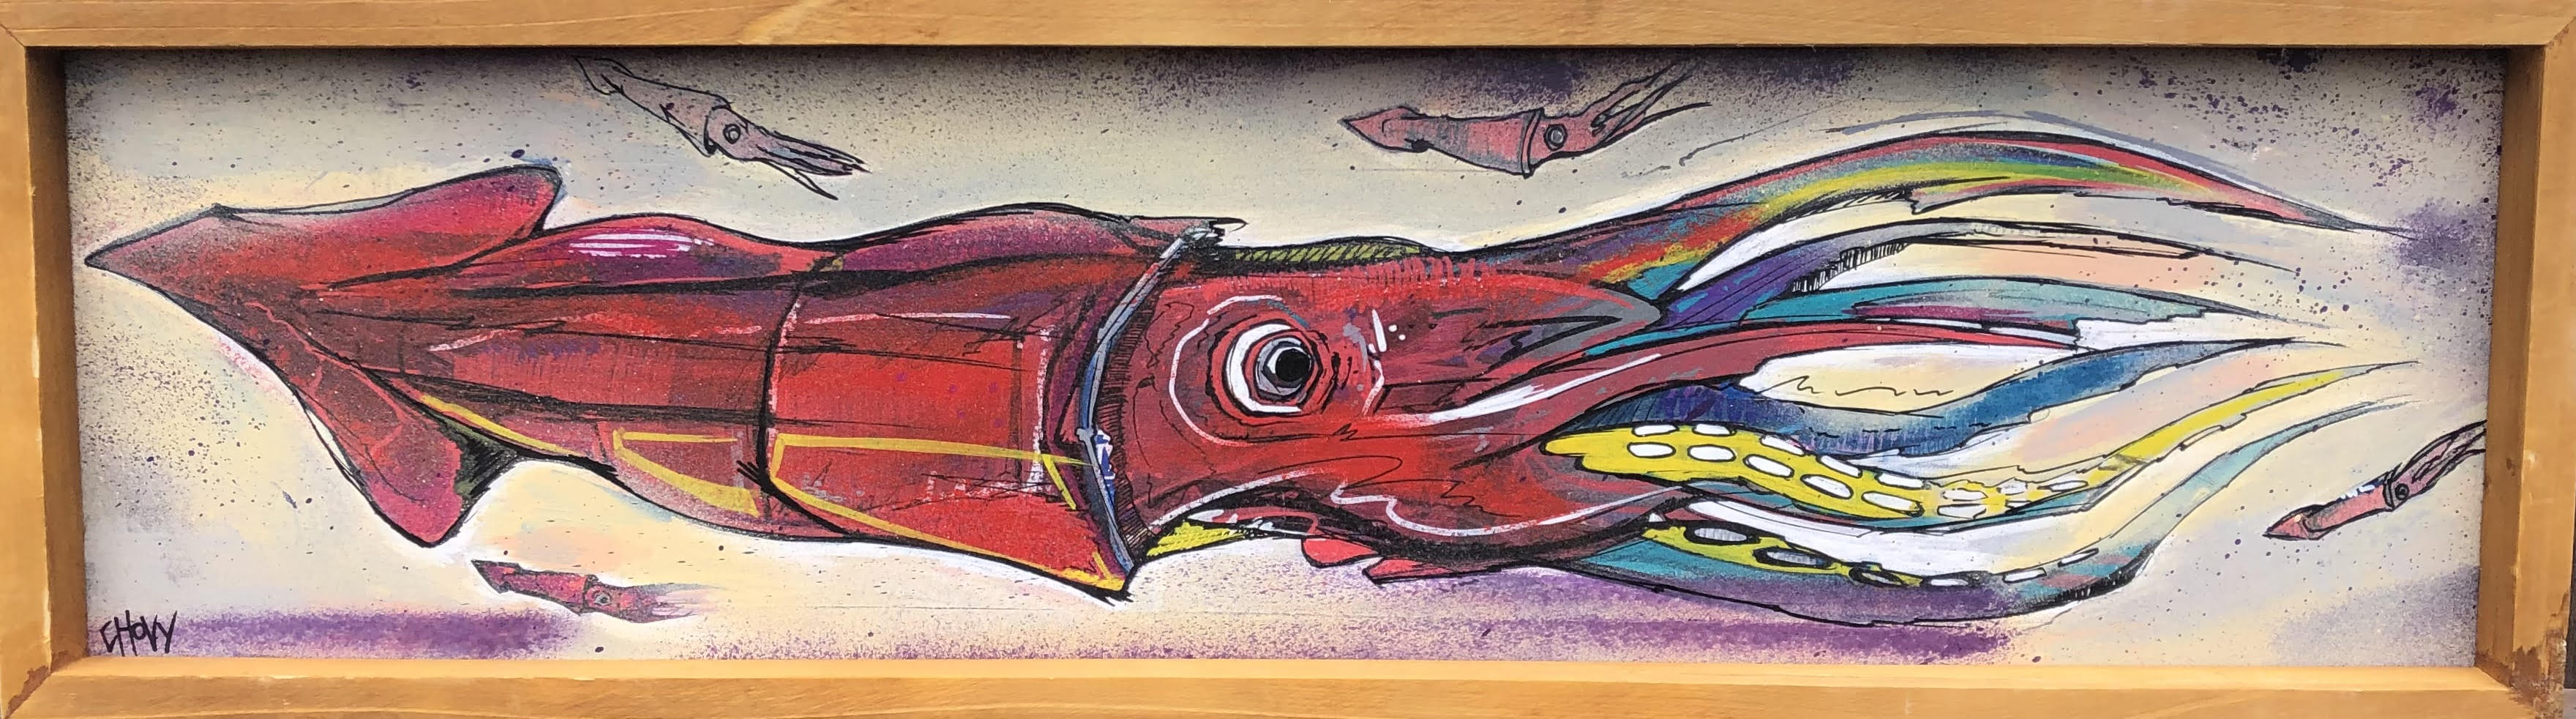 The Skeptic - Market Squid Original Art